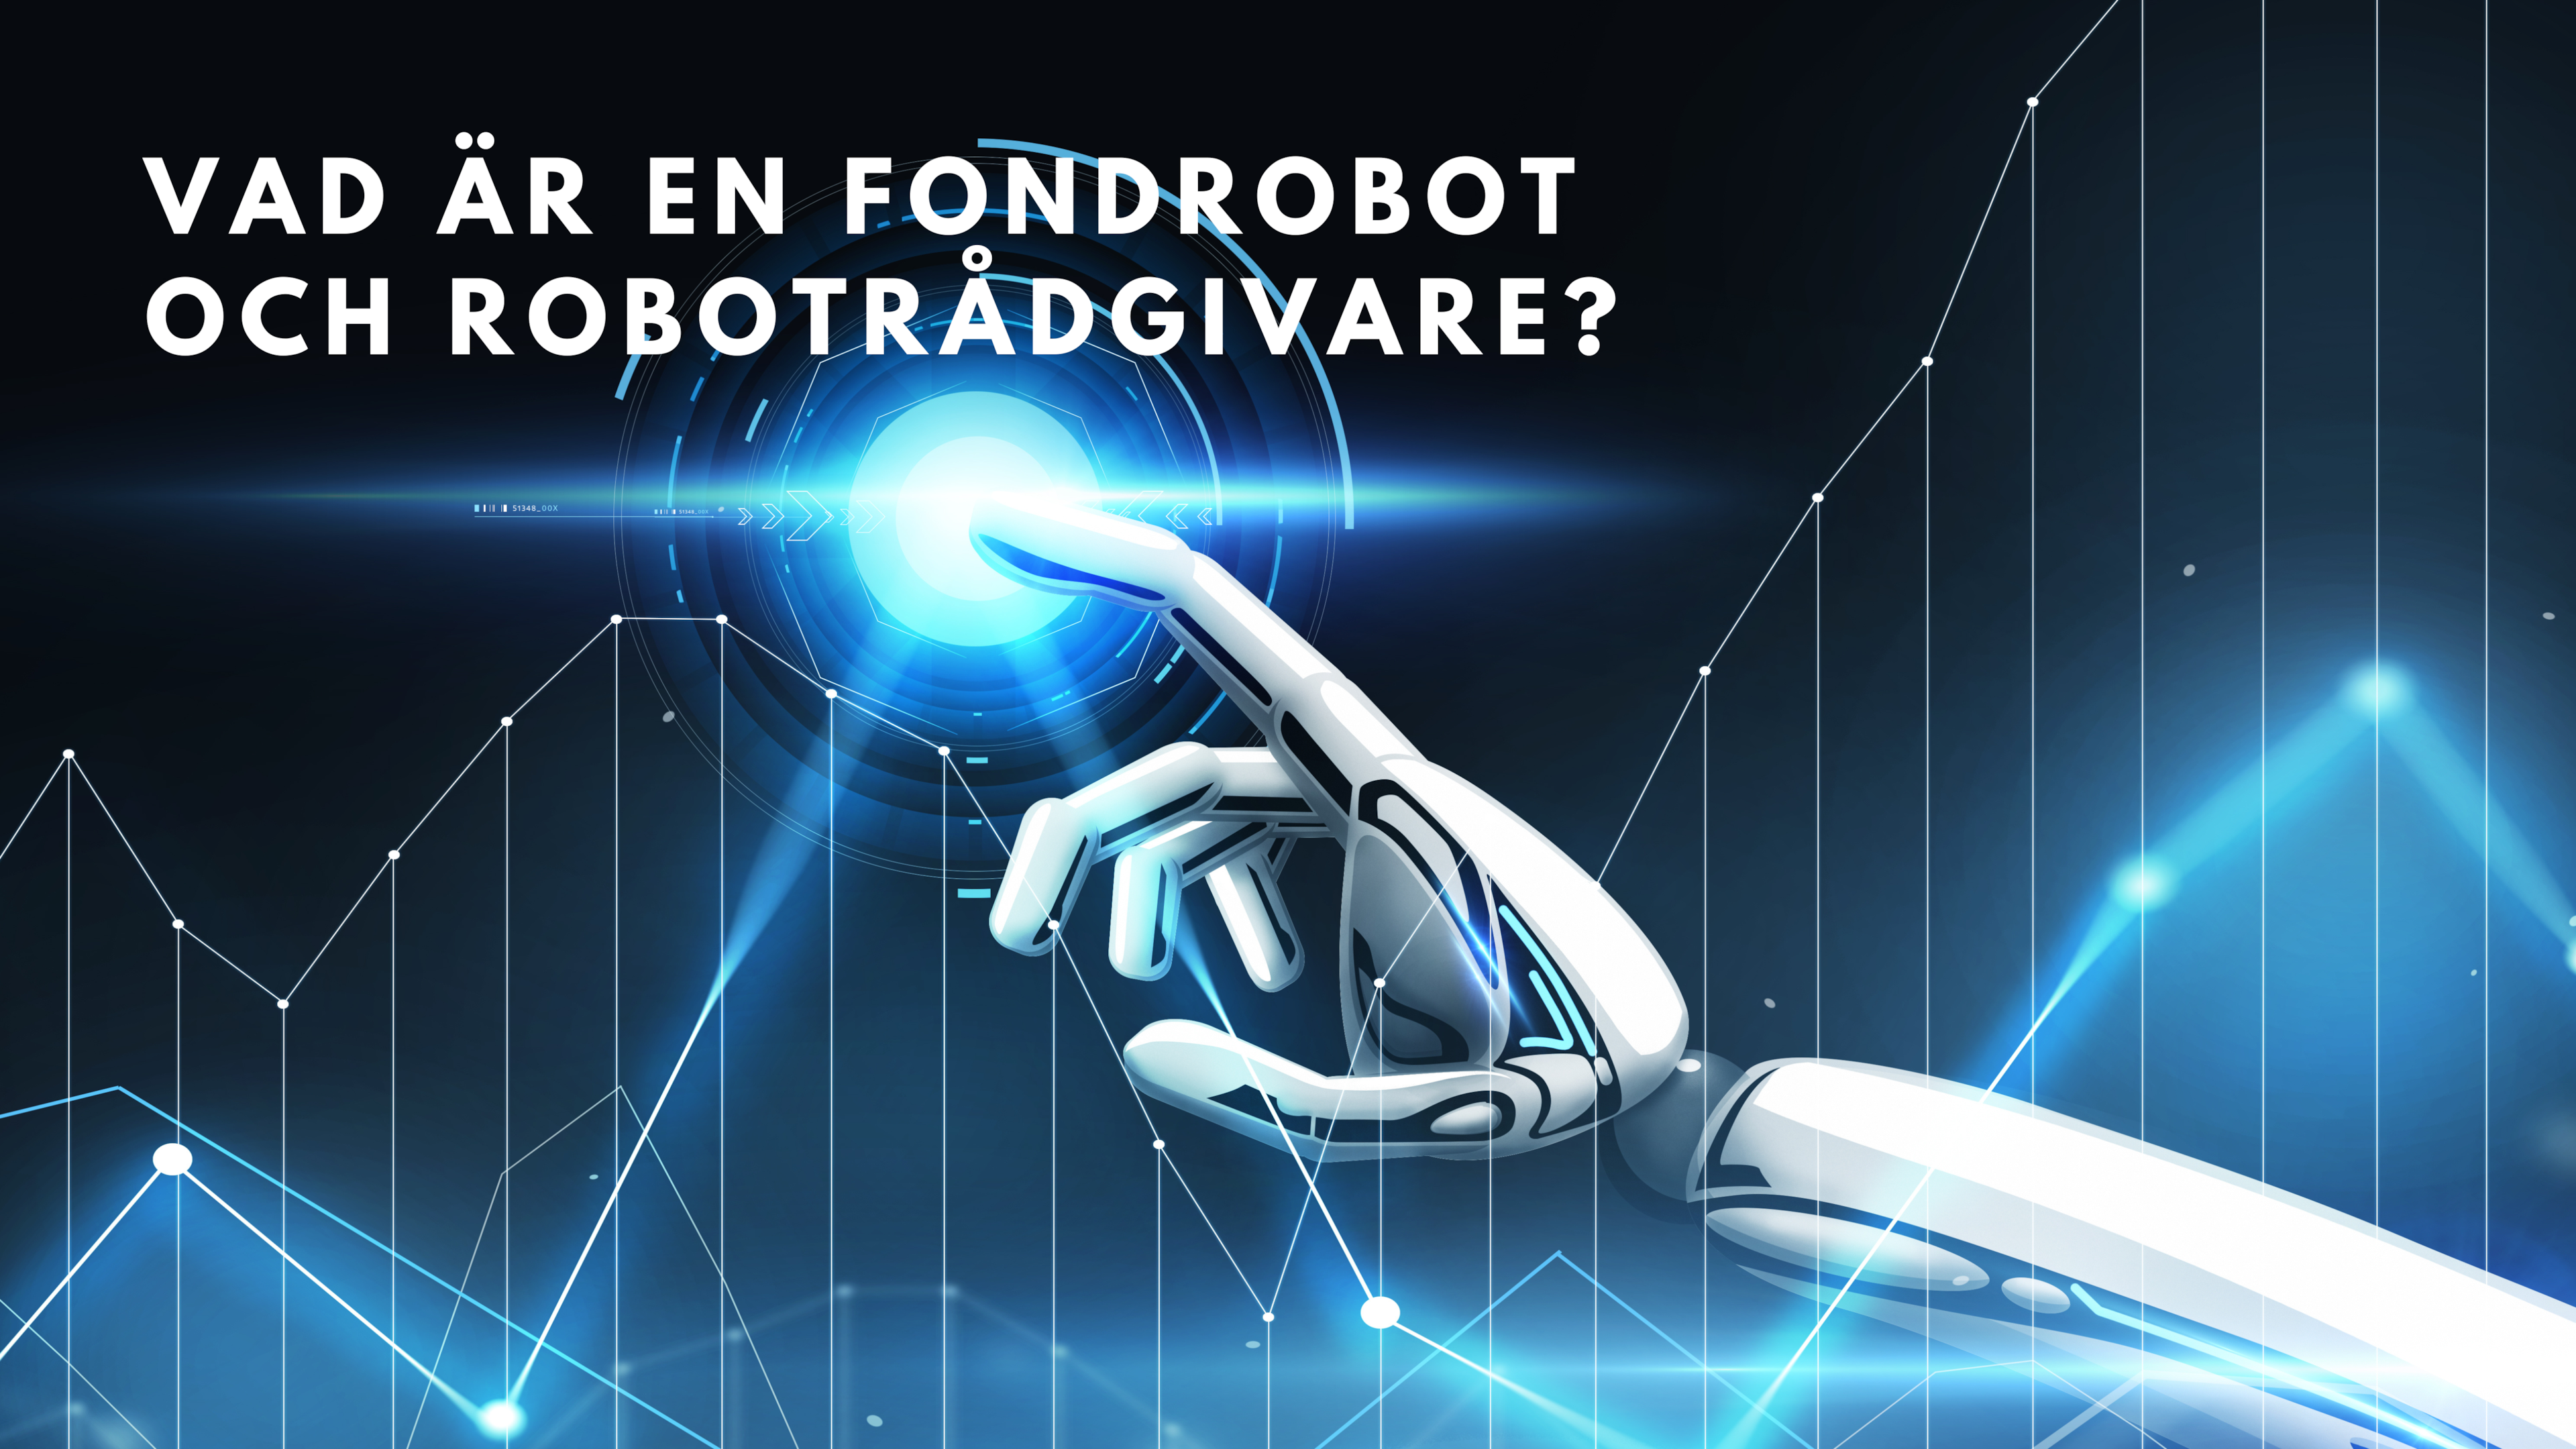 Vad är en fondrobot och robotrådgivare?